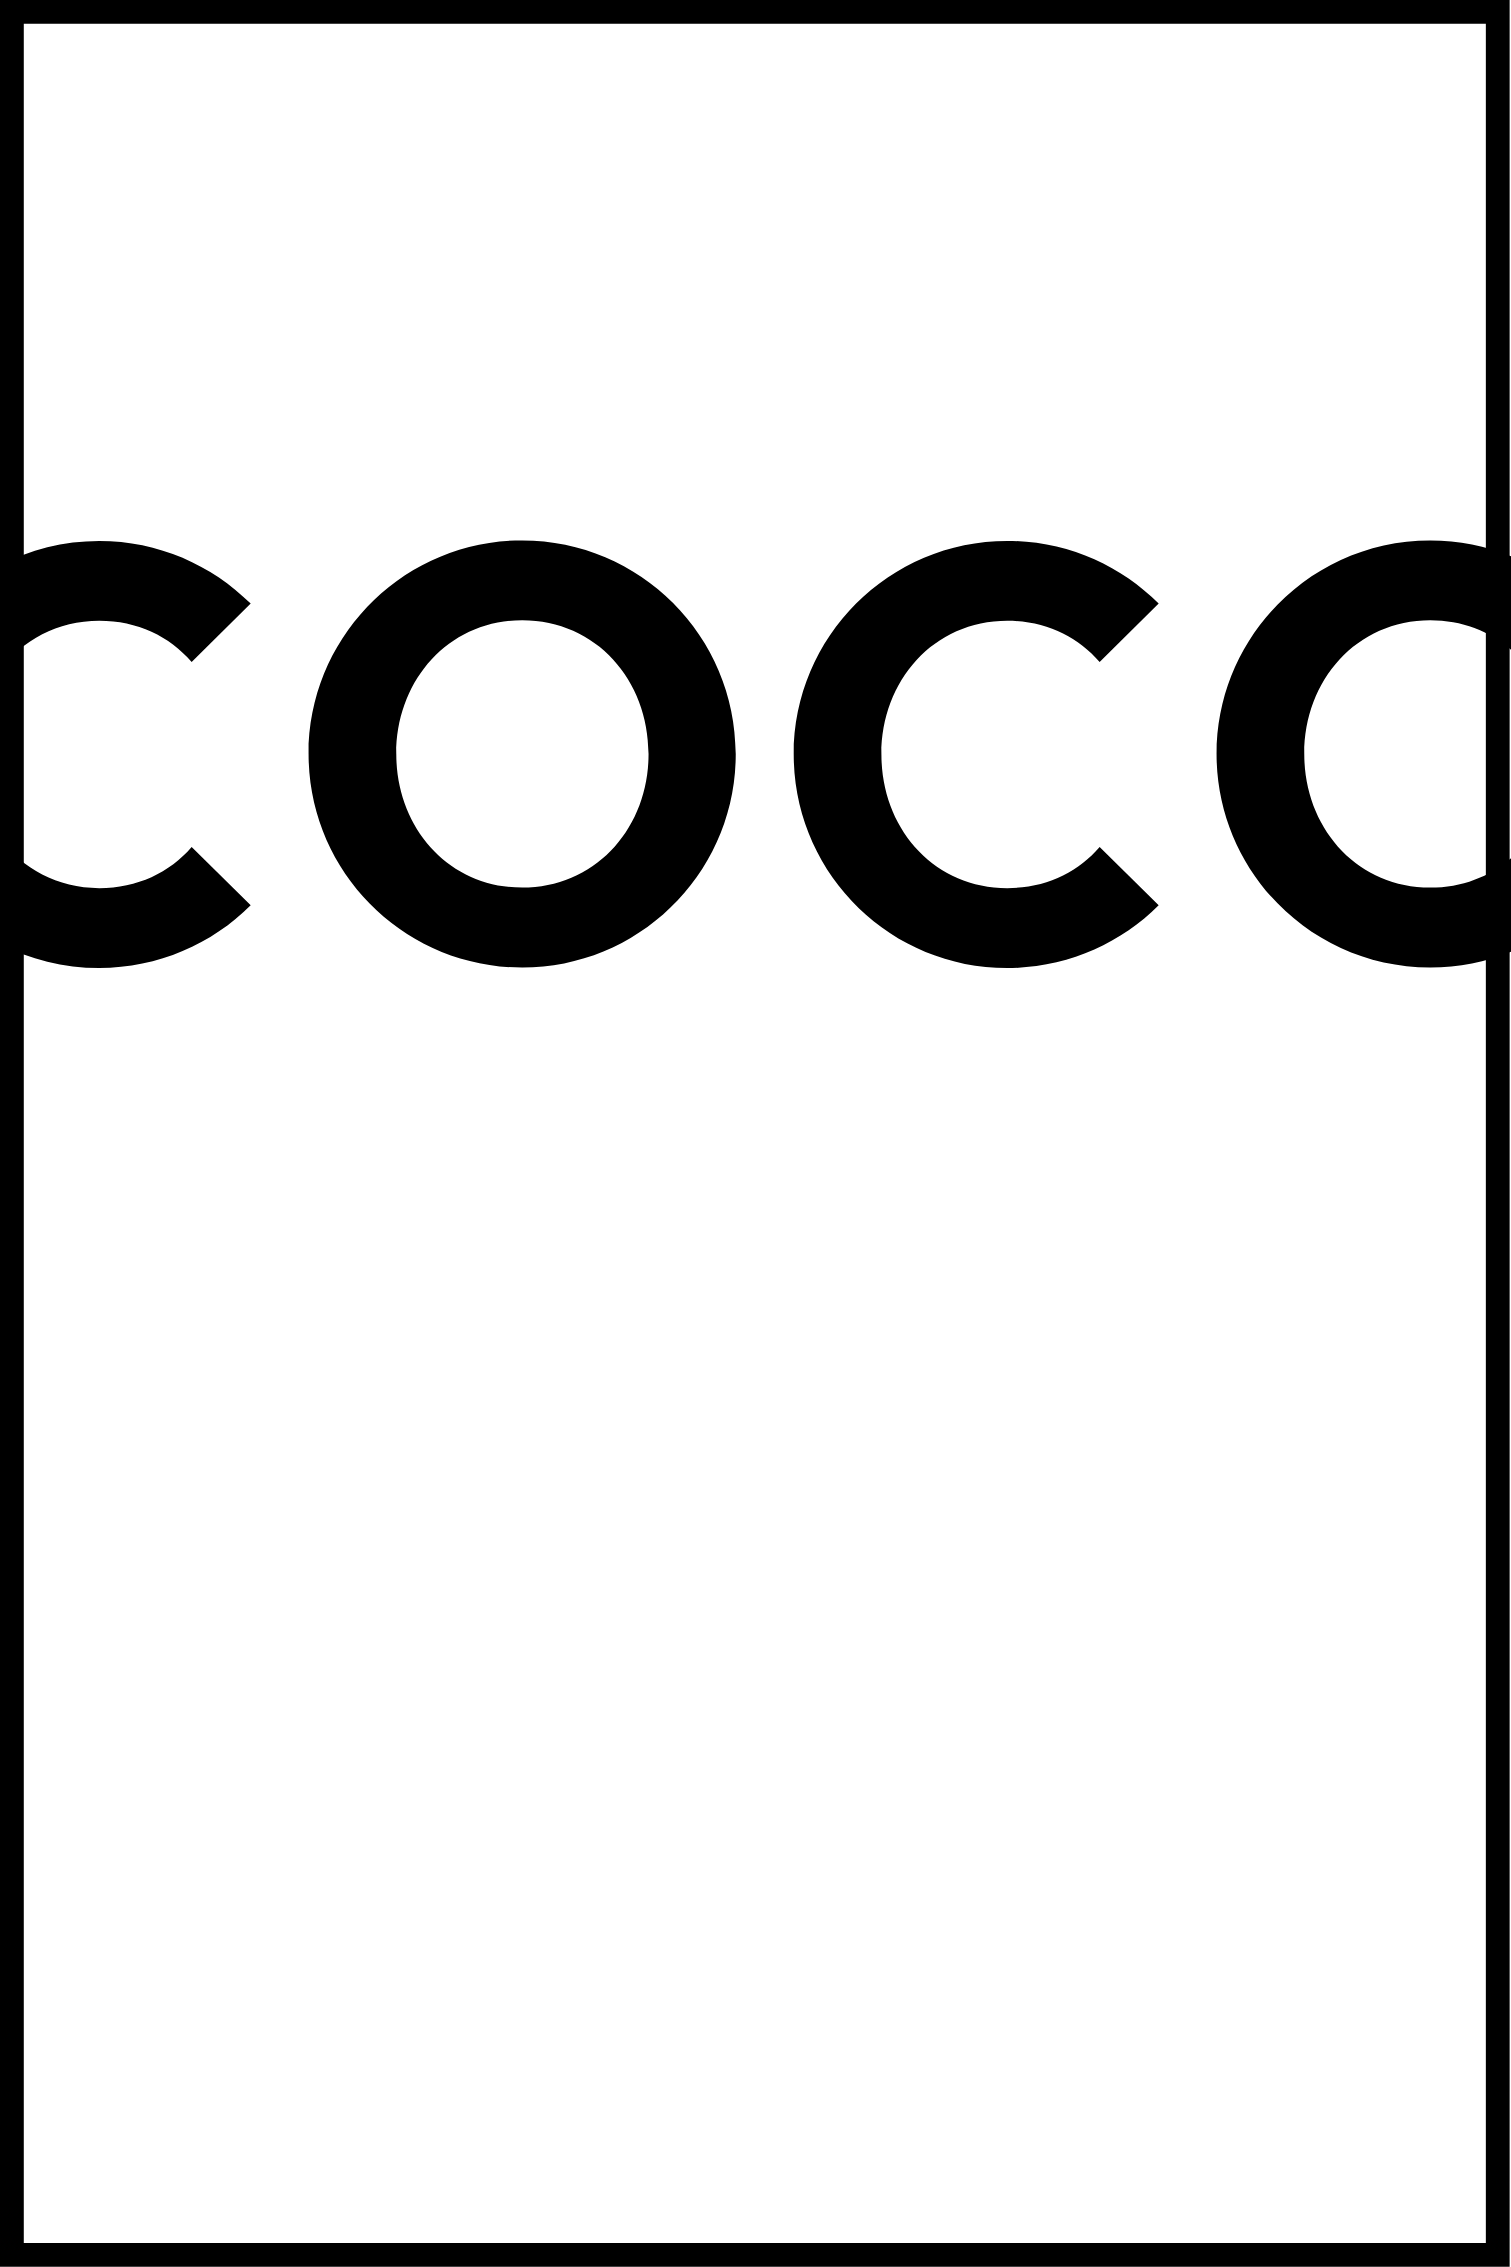 COCO affisch